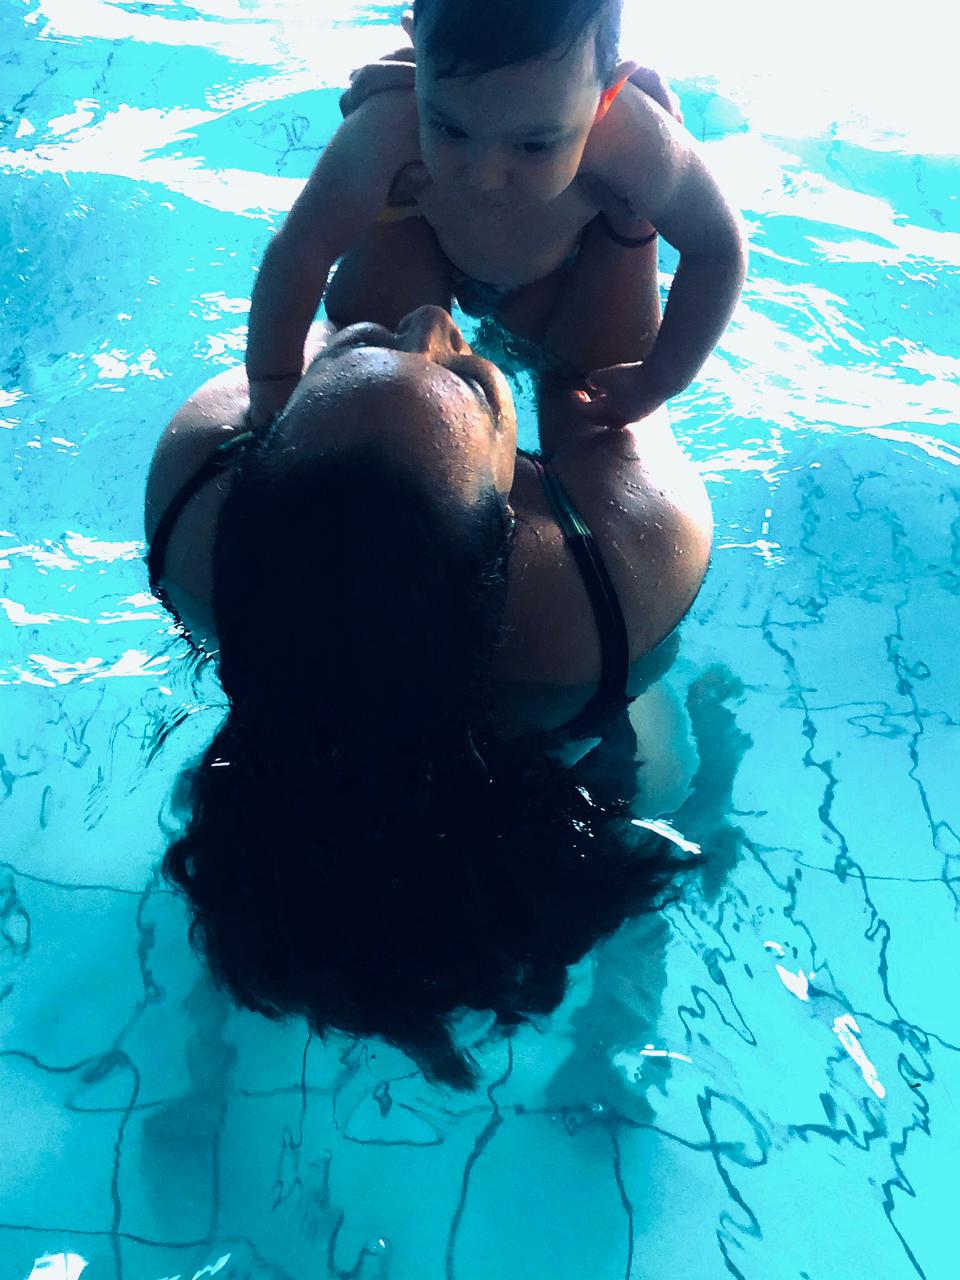 mãe e bebê na piscina